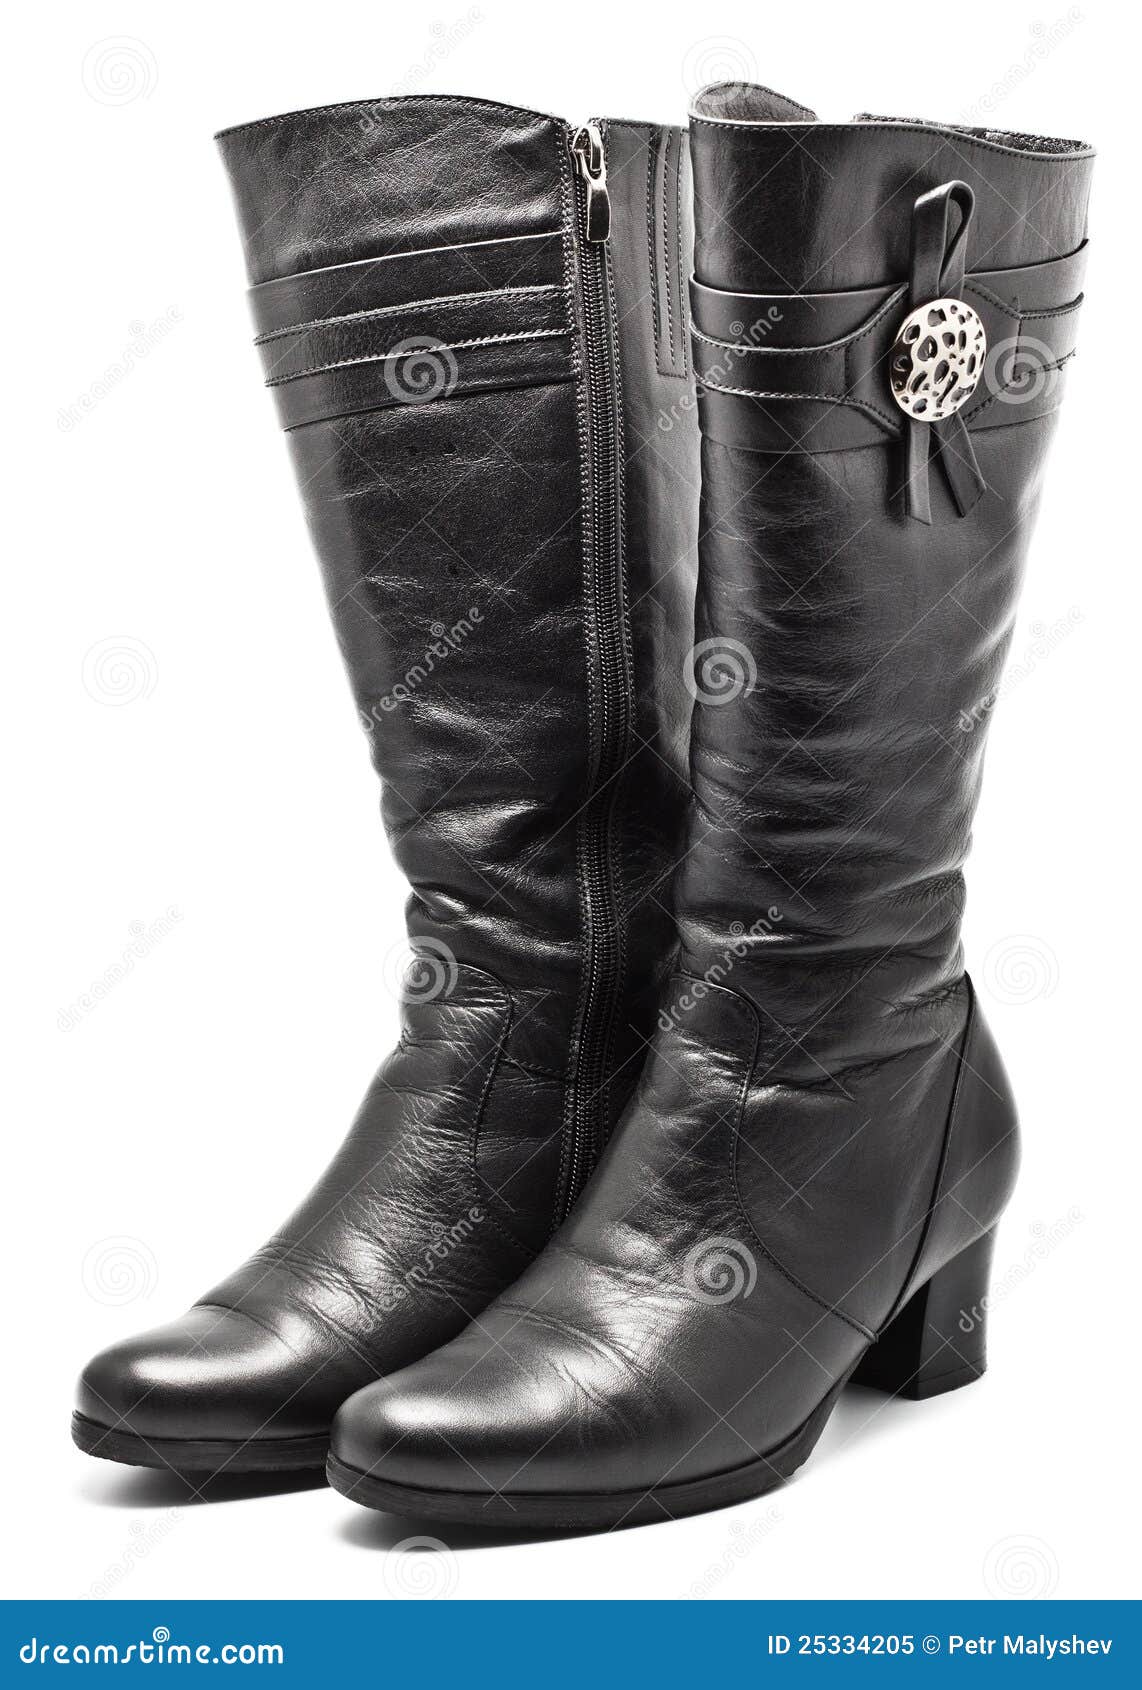 Black Leather Female Boots stock image. Image of elegant - 25334205